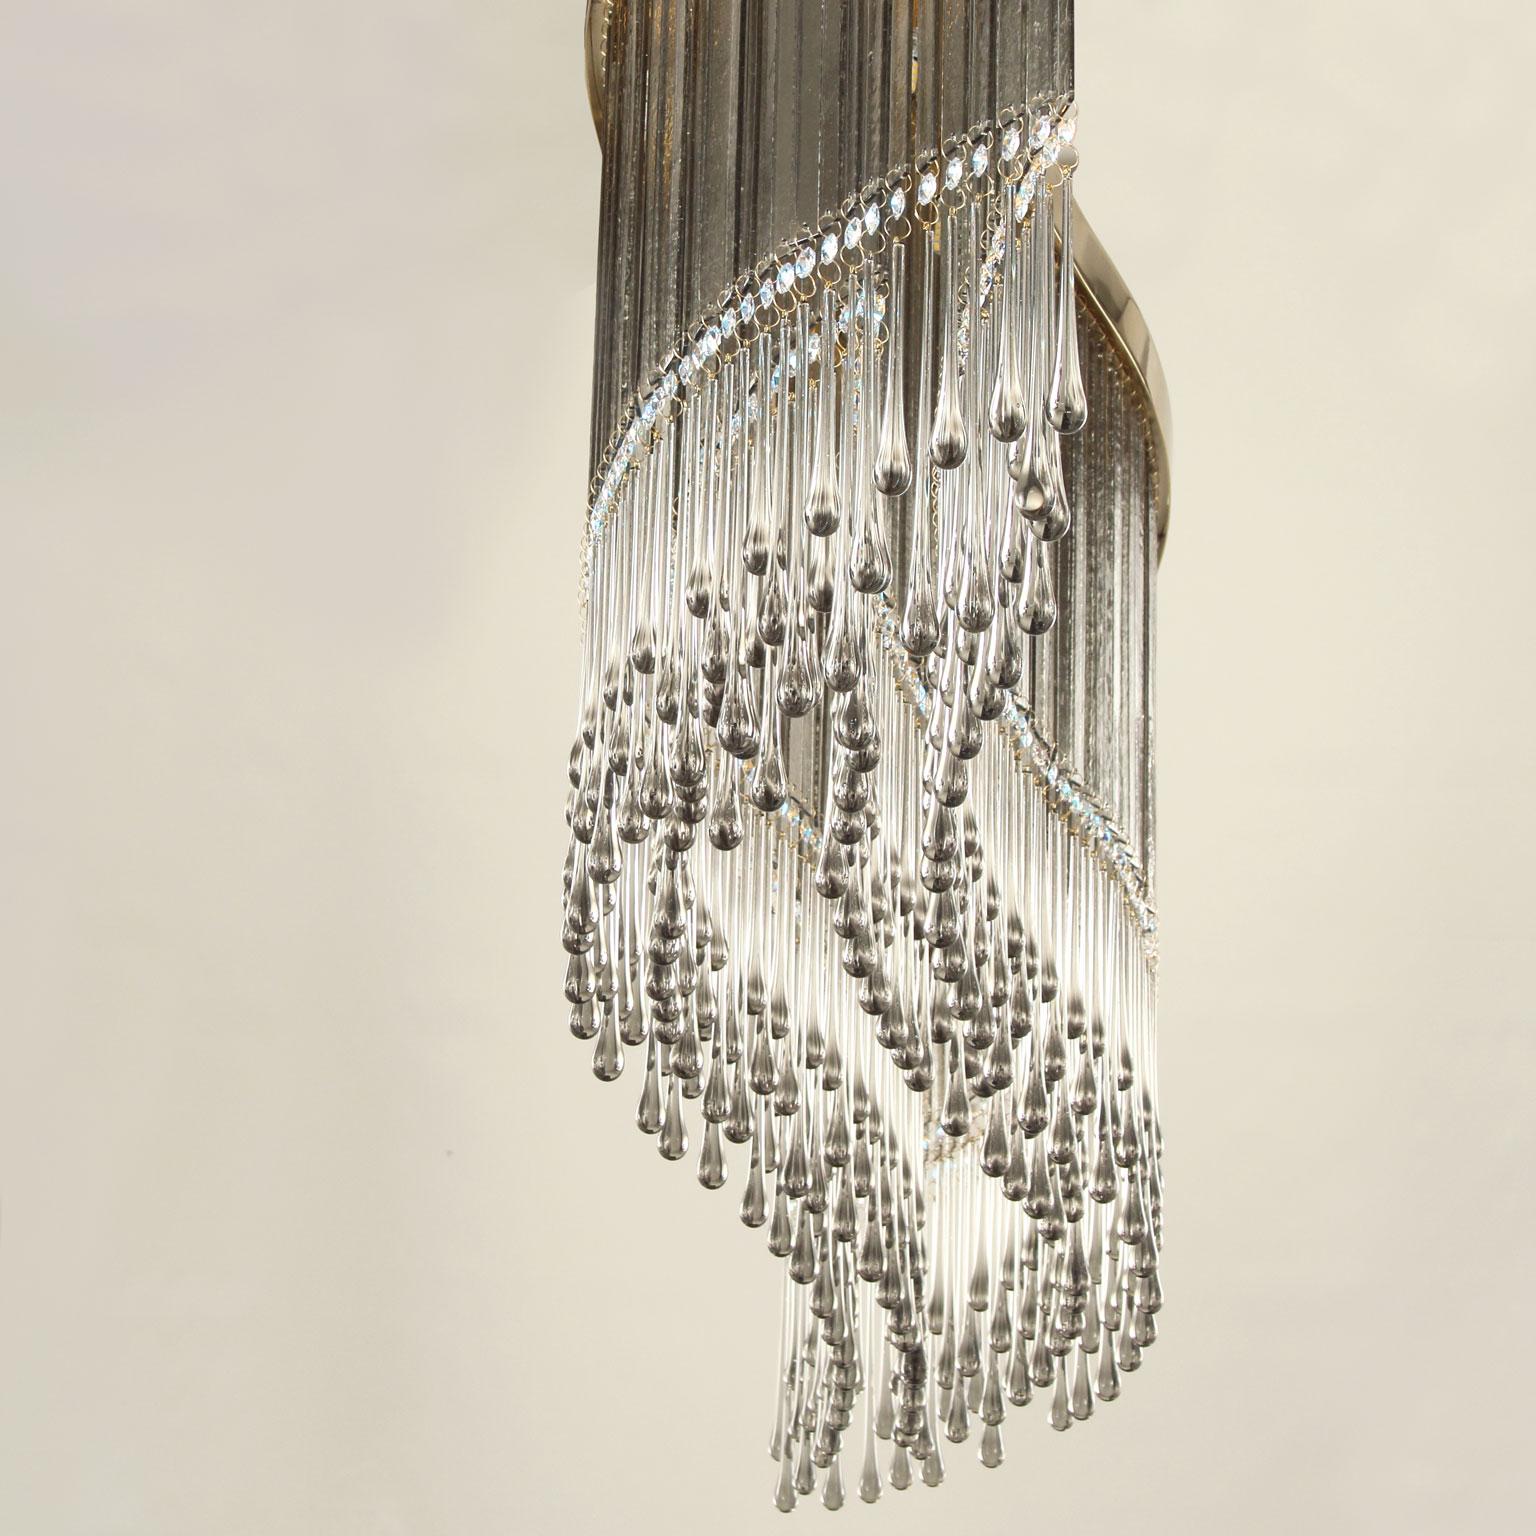 Suspension Dancer en verre de Murano gris et cristal taillé  éléments par Multiforme.

La lampe design Dancer est notre interprétation des lustres traditionnels en cristal et en verre. Toute la structure de cette suspension est composée d'une